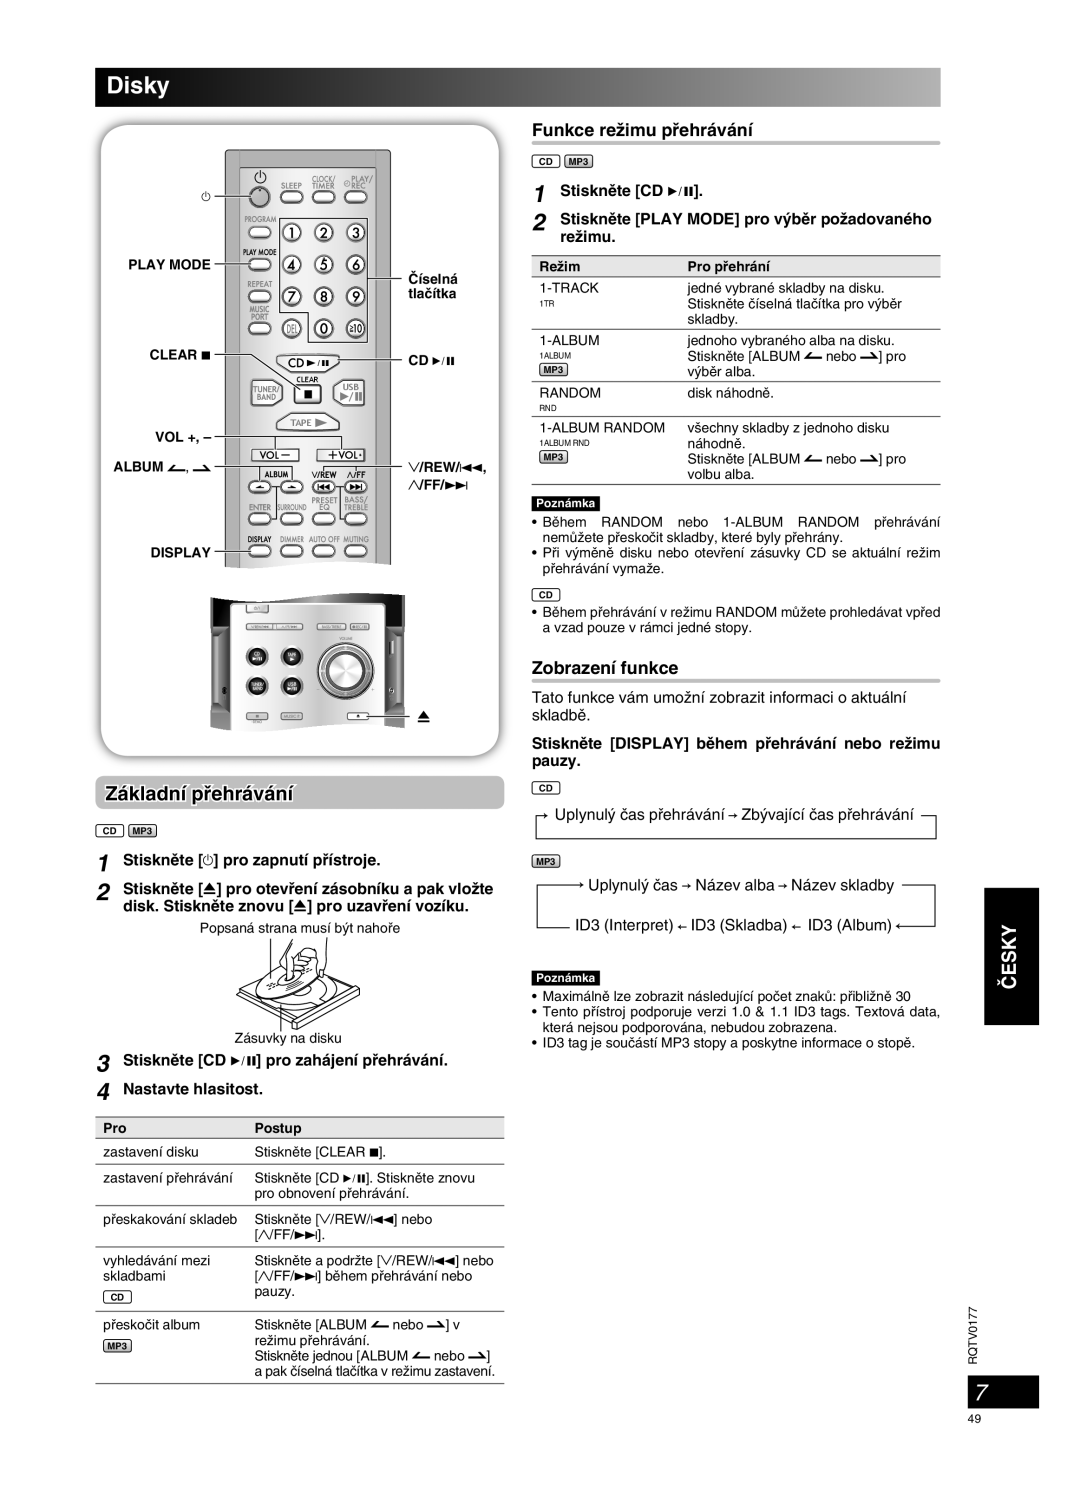 Panasonic SC-PM45 manual Disky, âESKY, Základní pﬁehrávání, Funkce reÏimu pﬁehrávání, Zobrazení funkce 